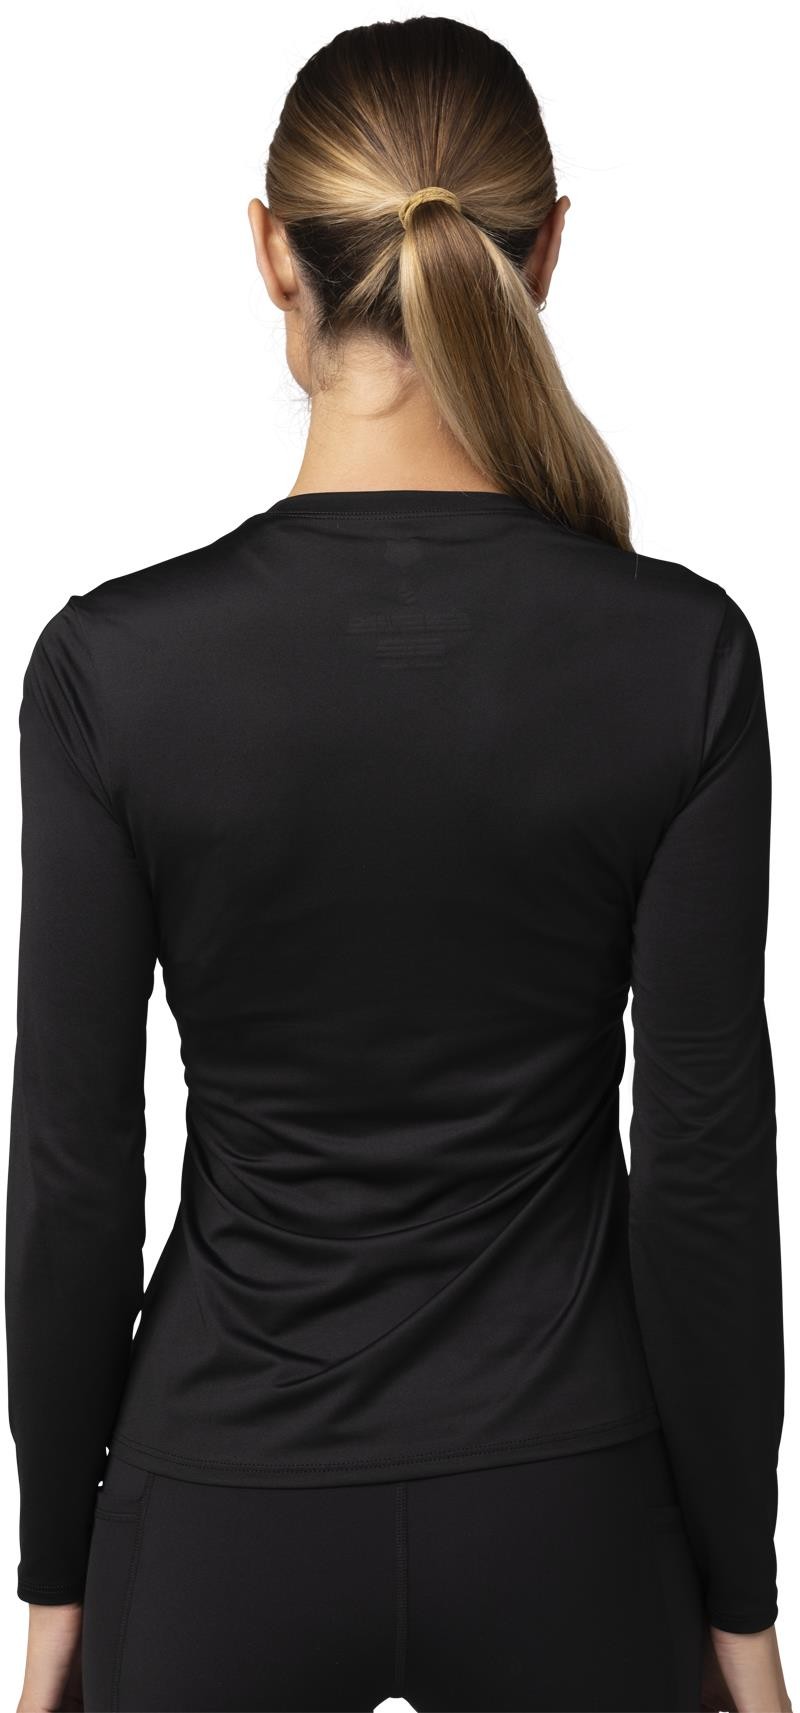 Tecbase Womens Long Sleeve MTB Shirt image 1